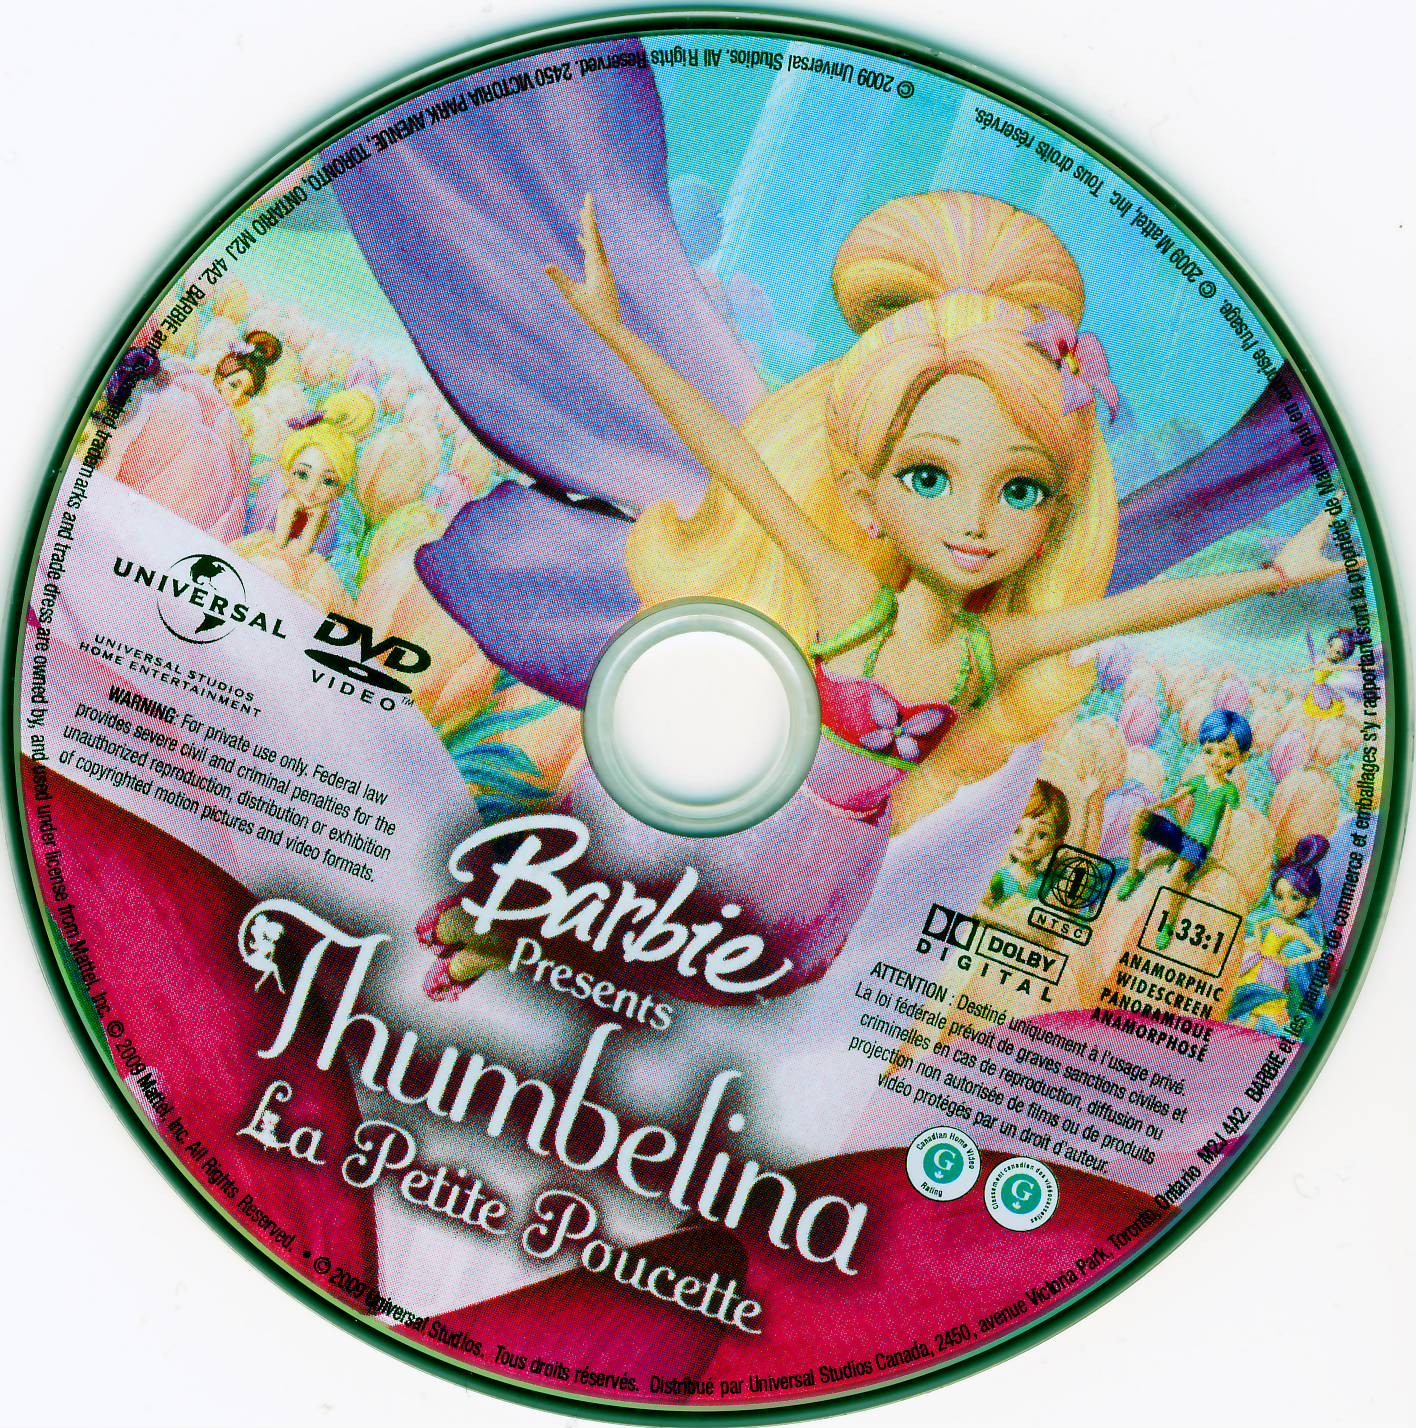 Barbie Presents Thumbelina La petite poucette